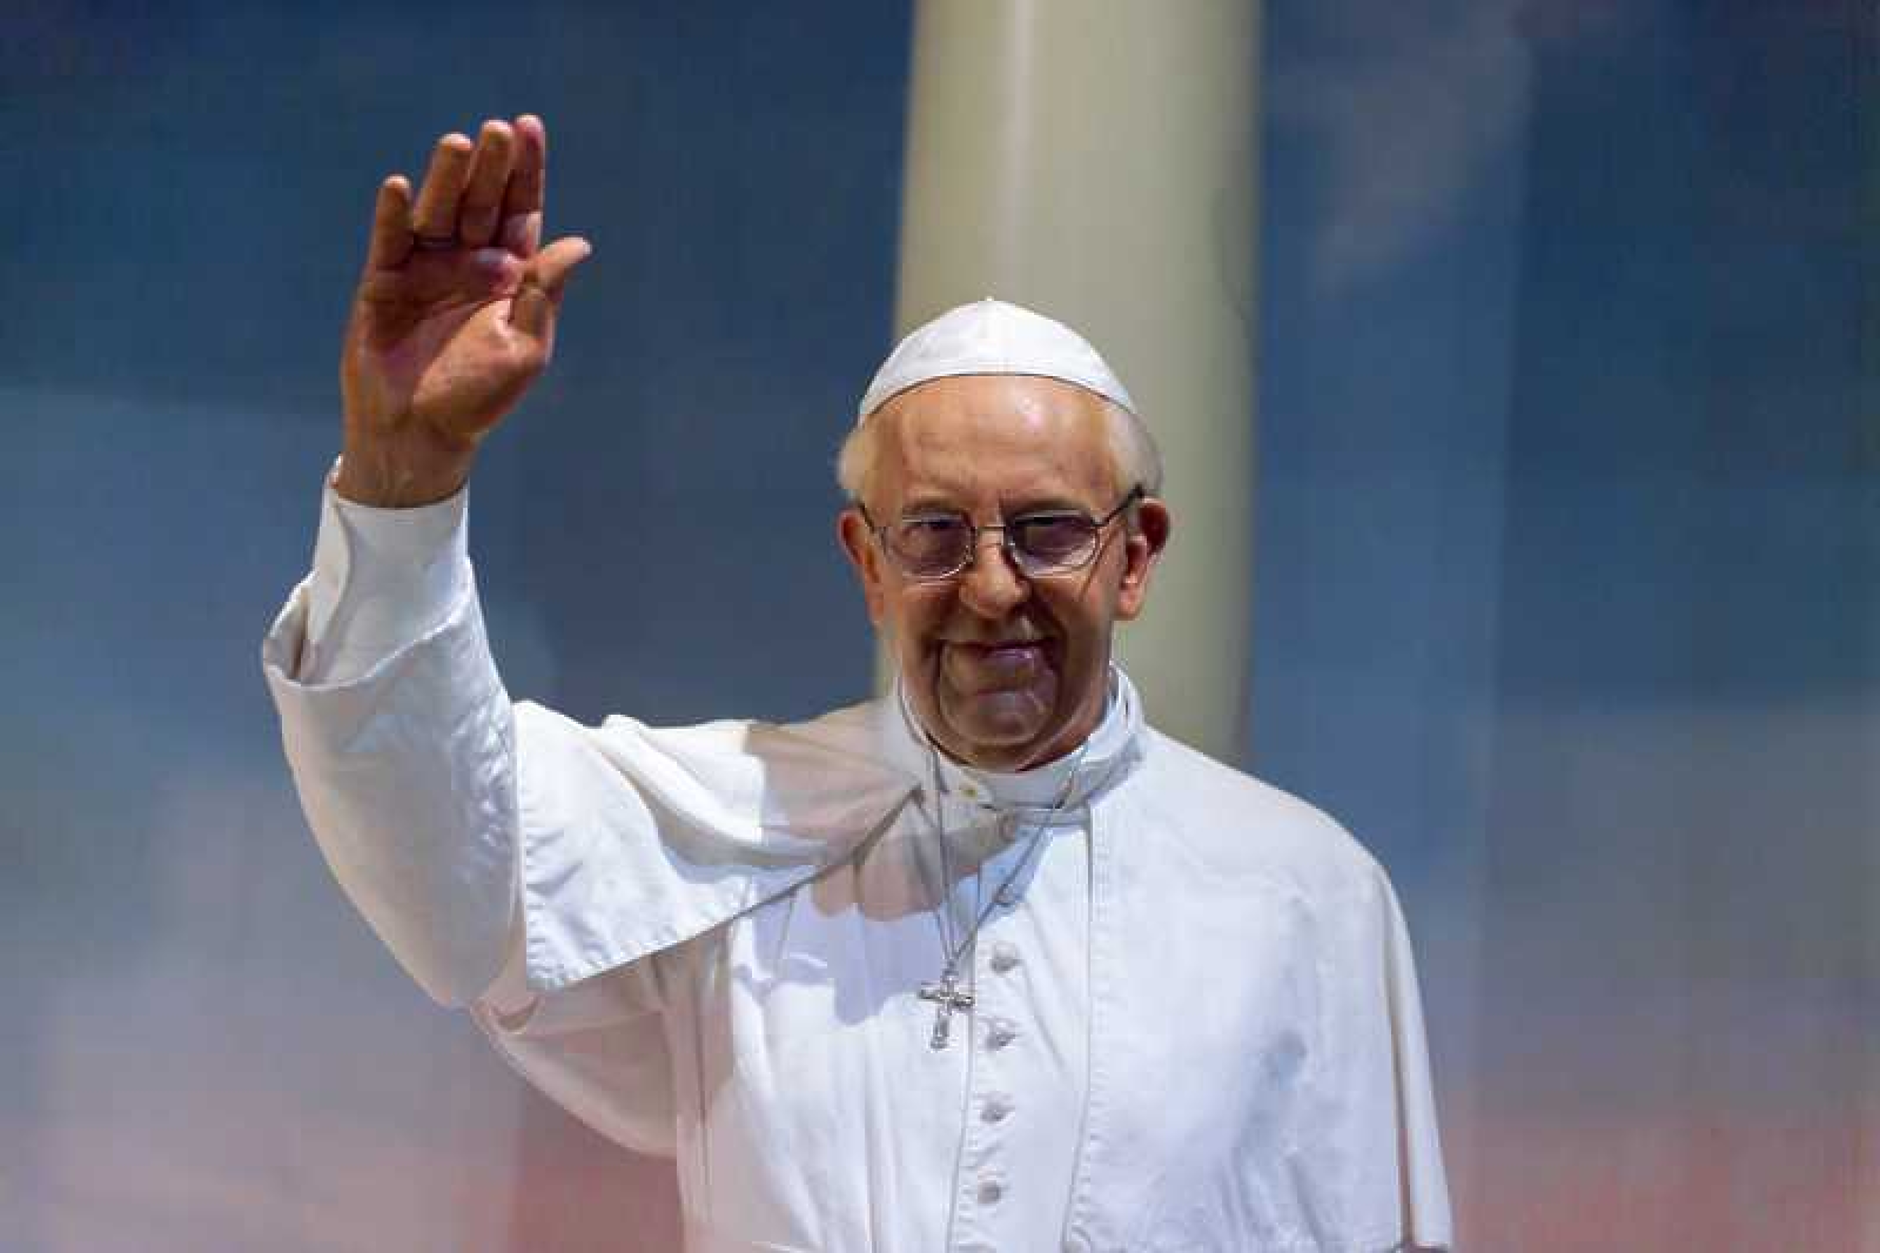 Папата се връща към обичайната си дейност след операцията